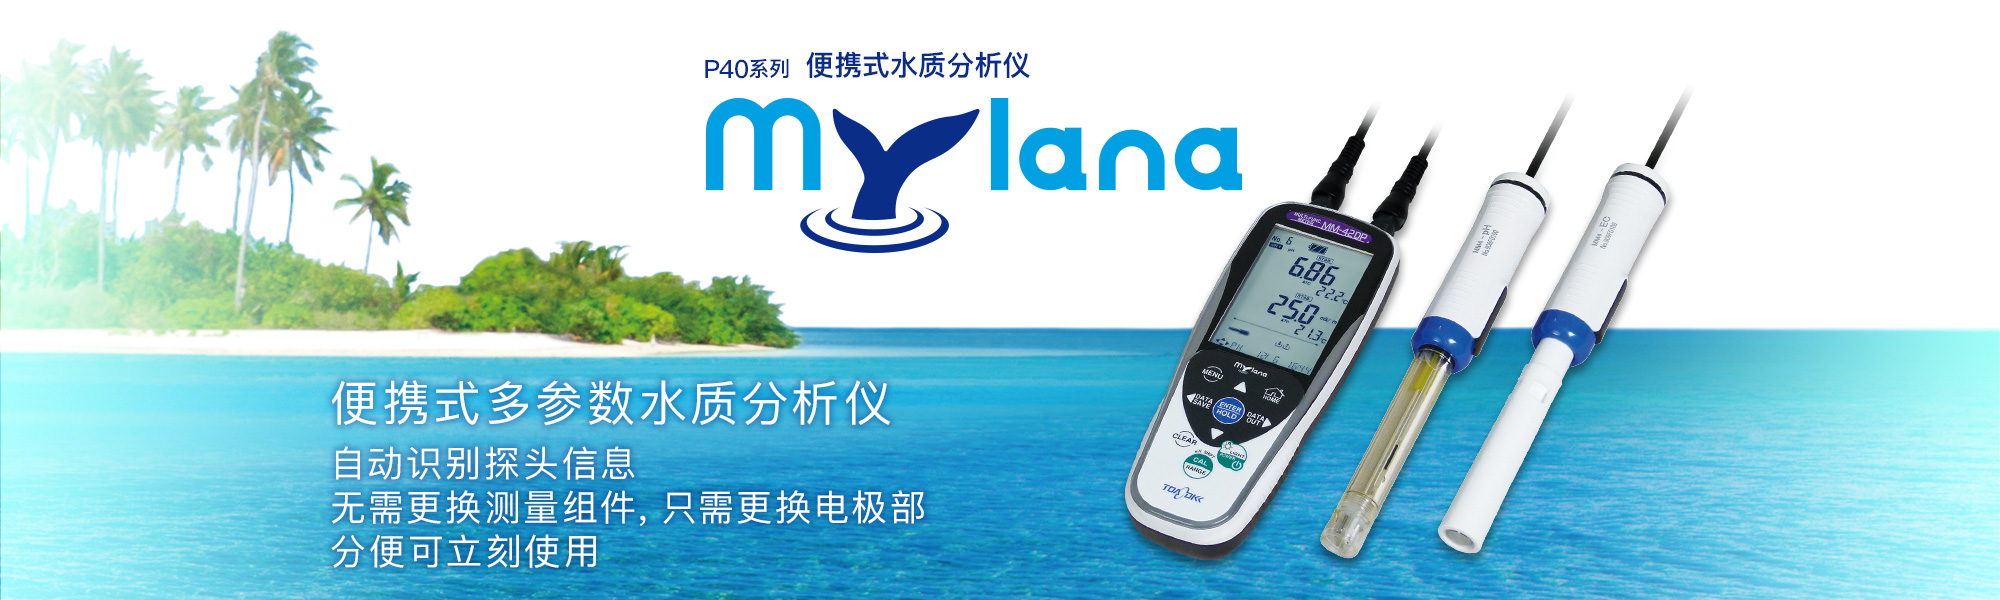 便携式水质分析仪 P40系列「Mylana」